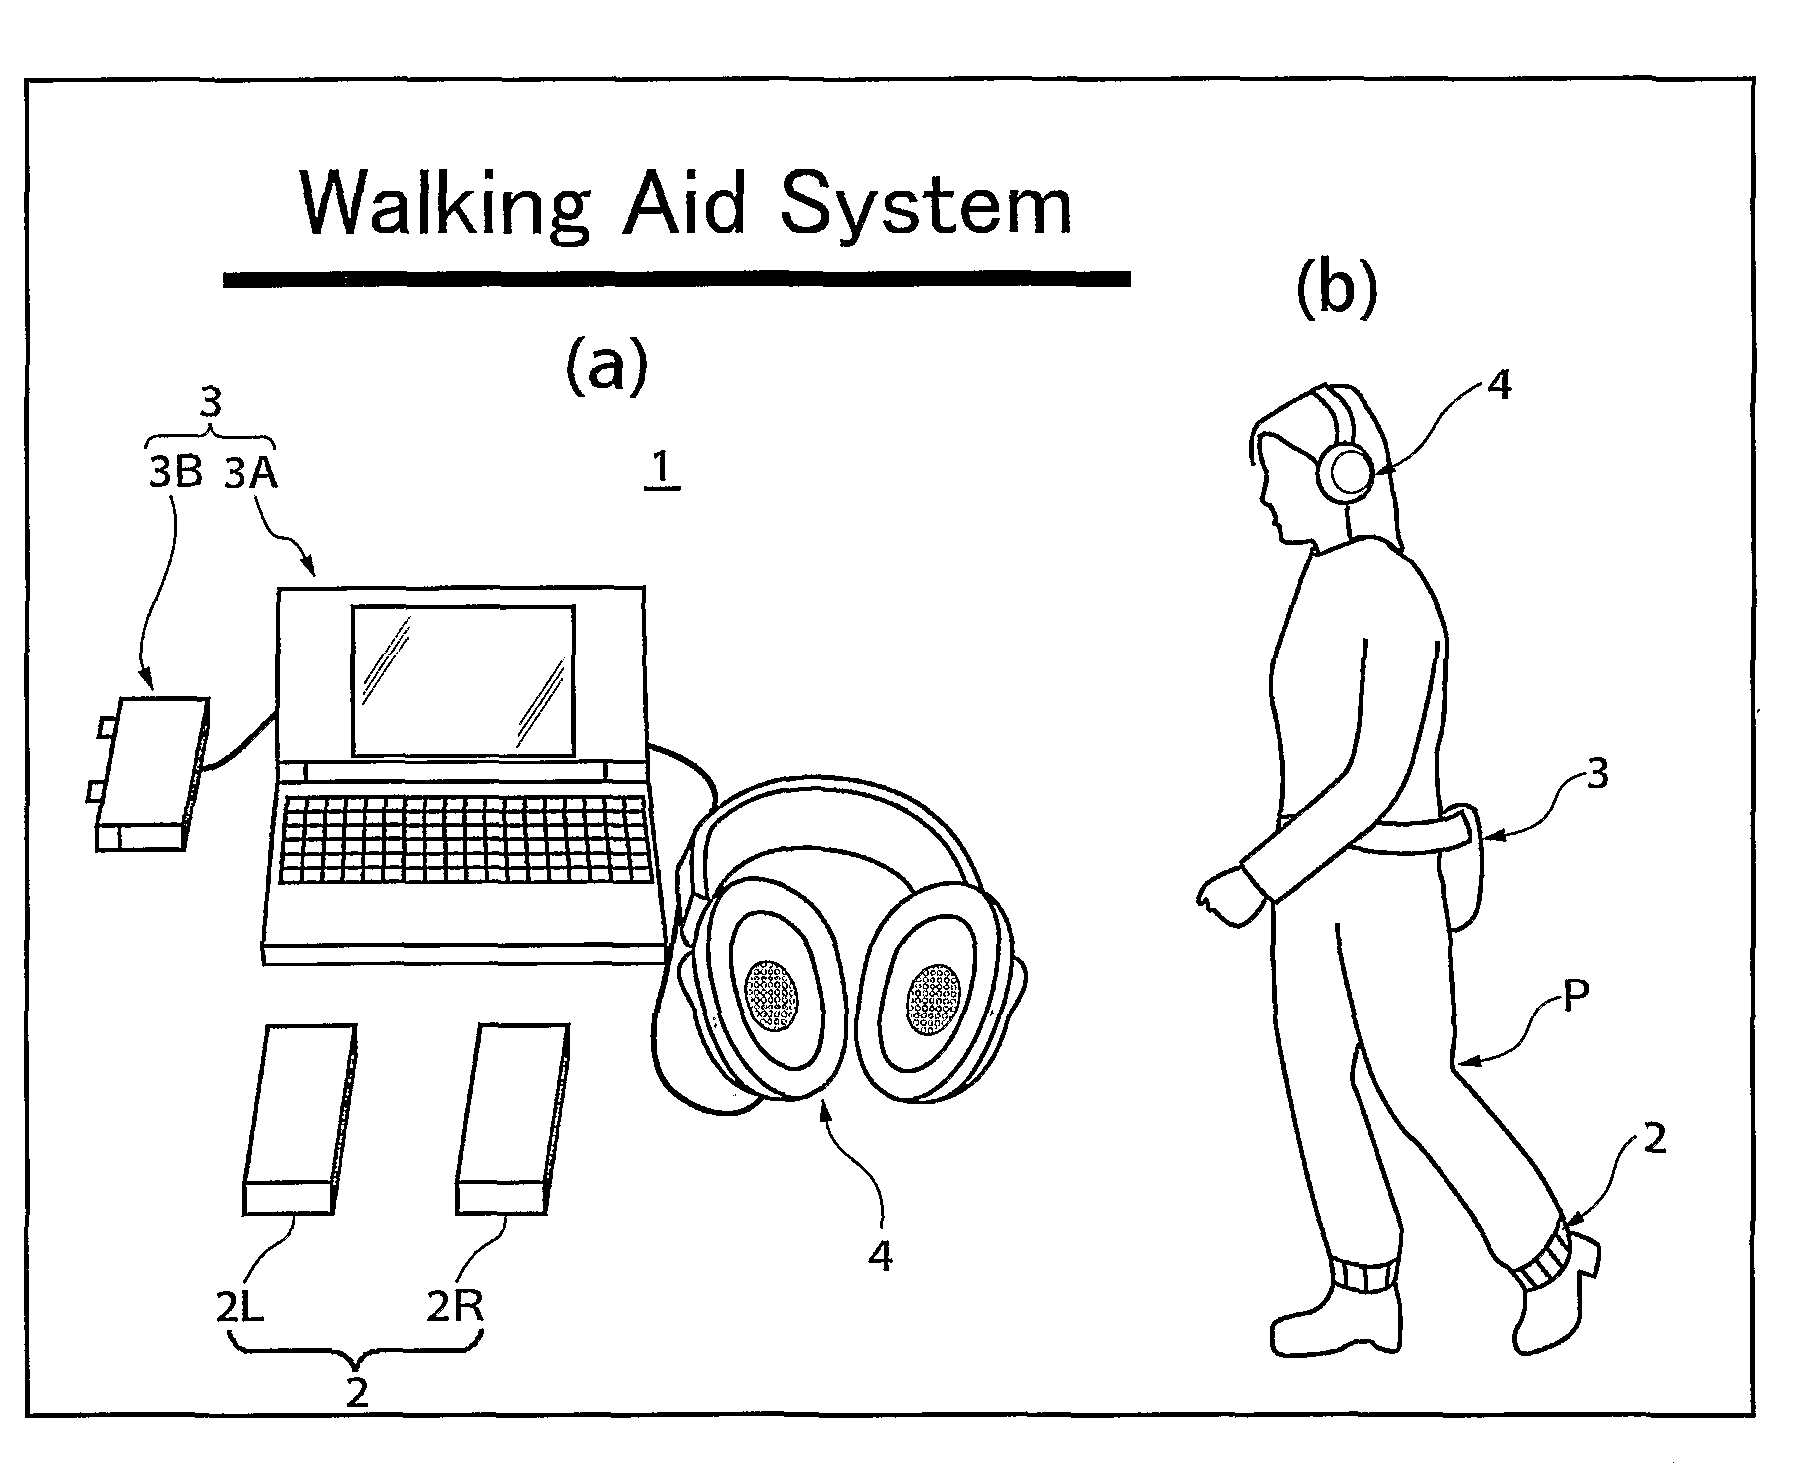 Walking aid system